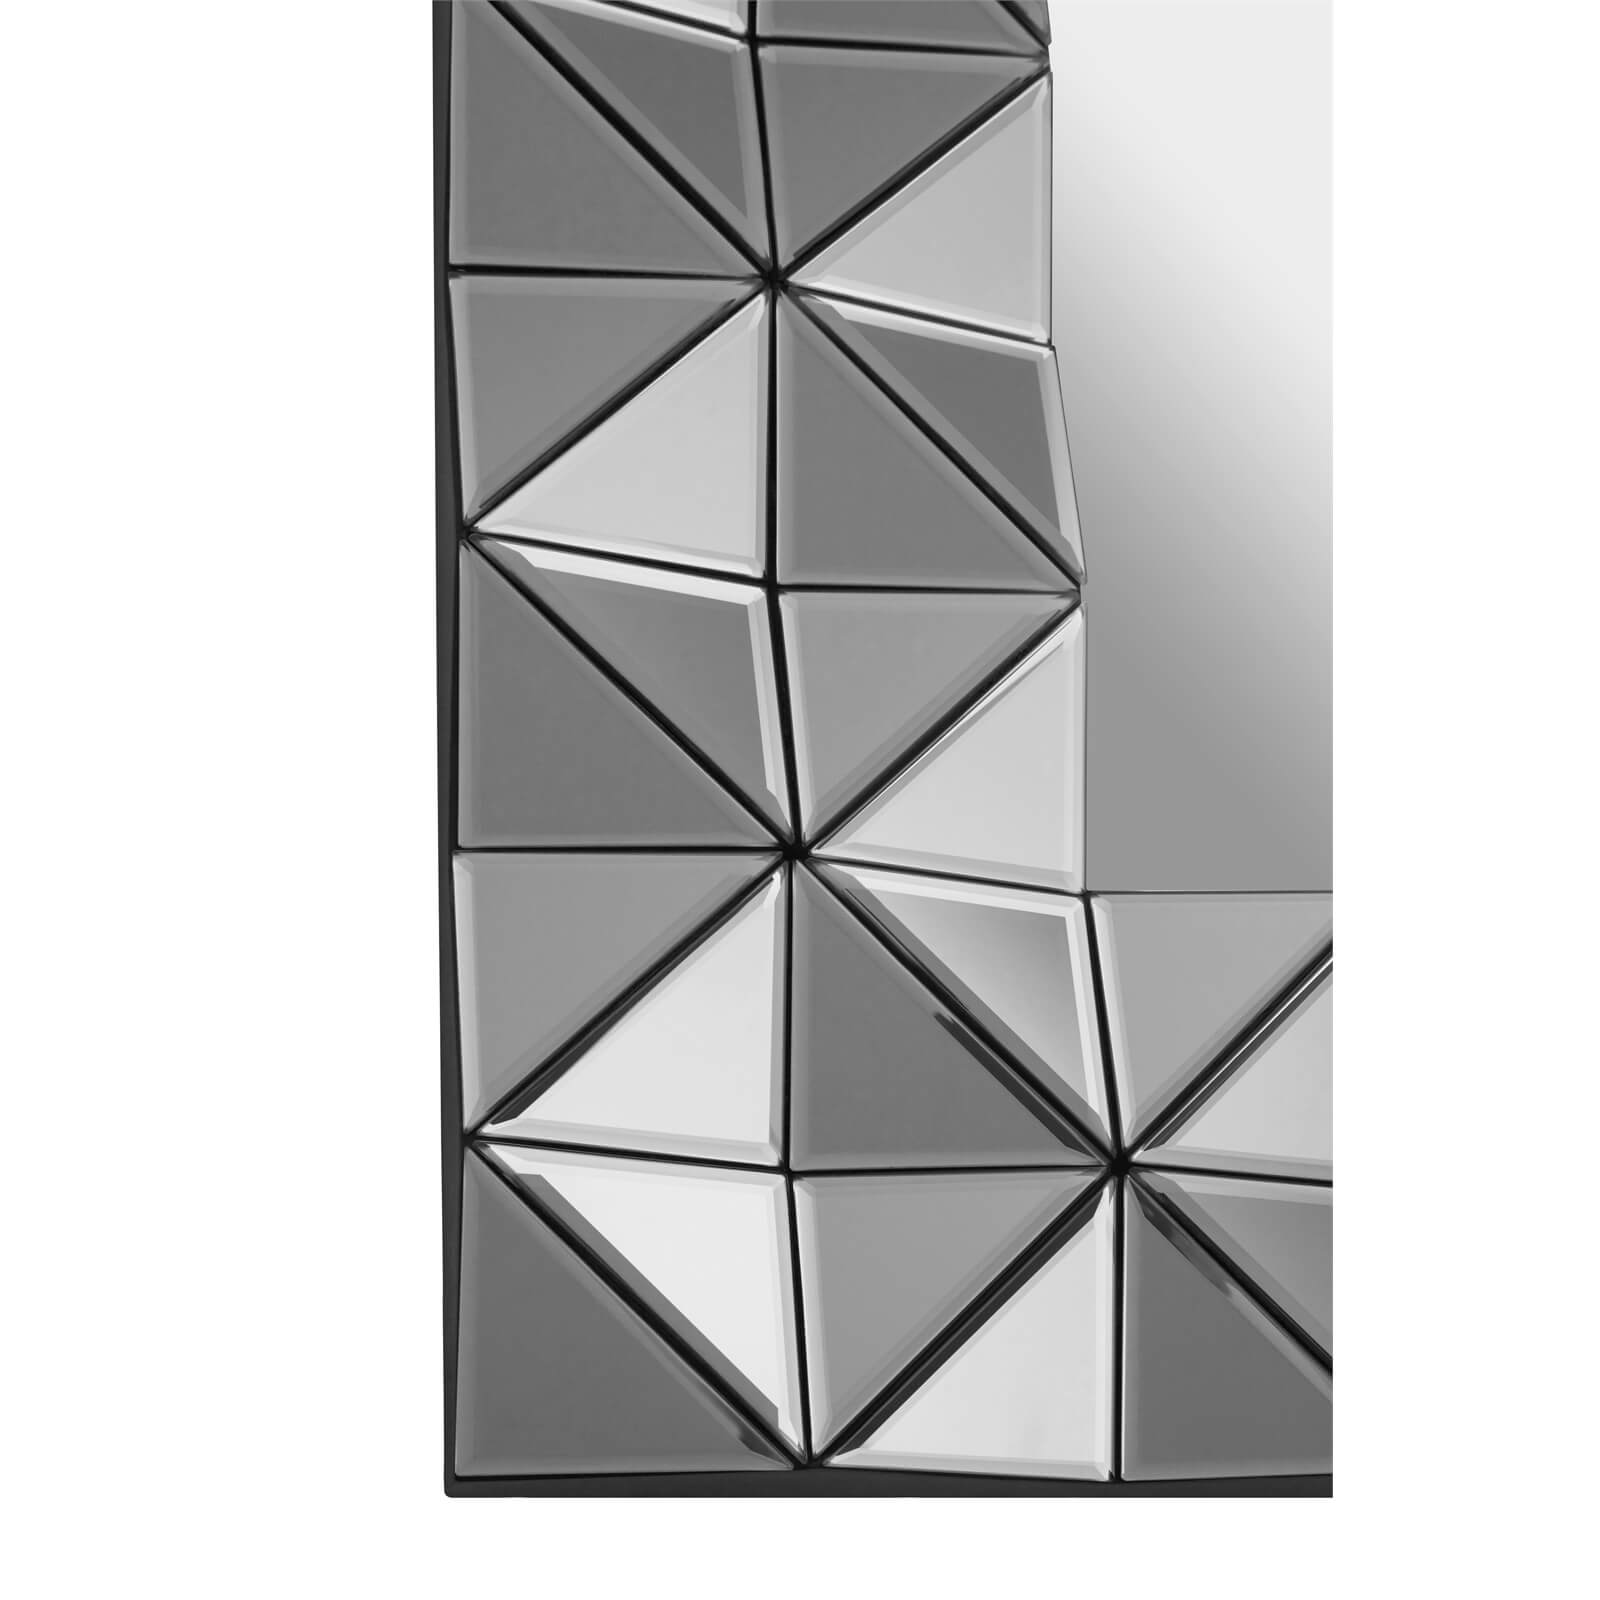 Compton 3D Geometric Wall Mirror